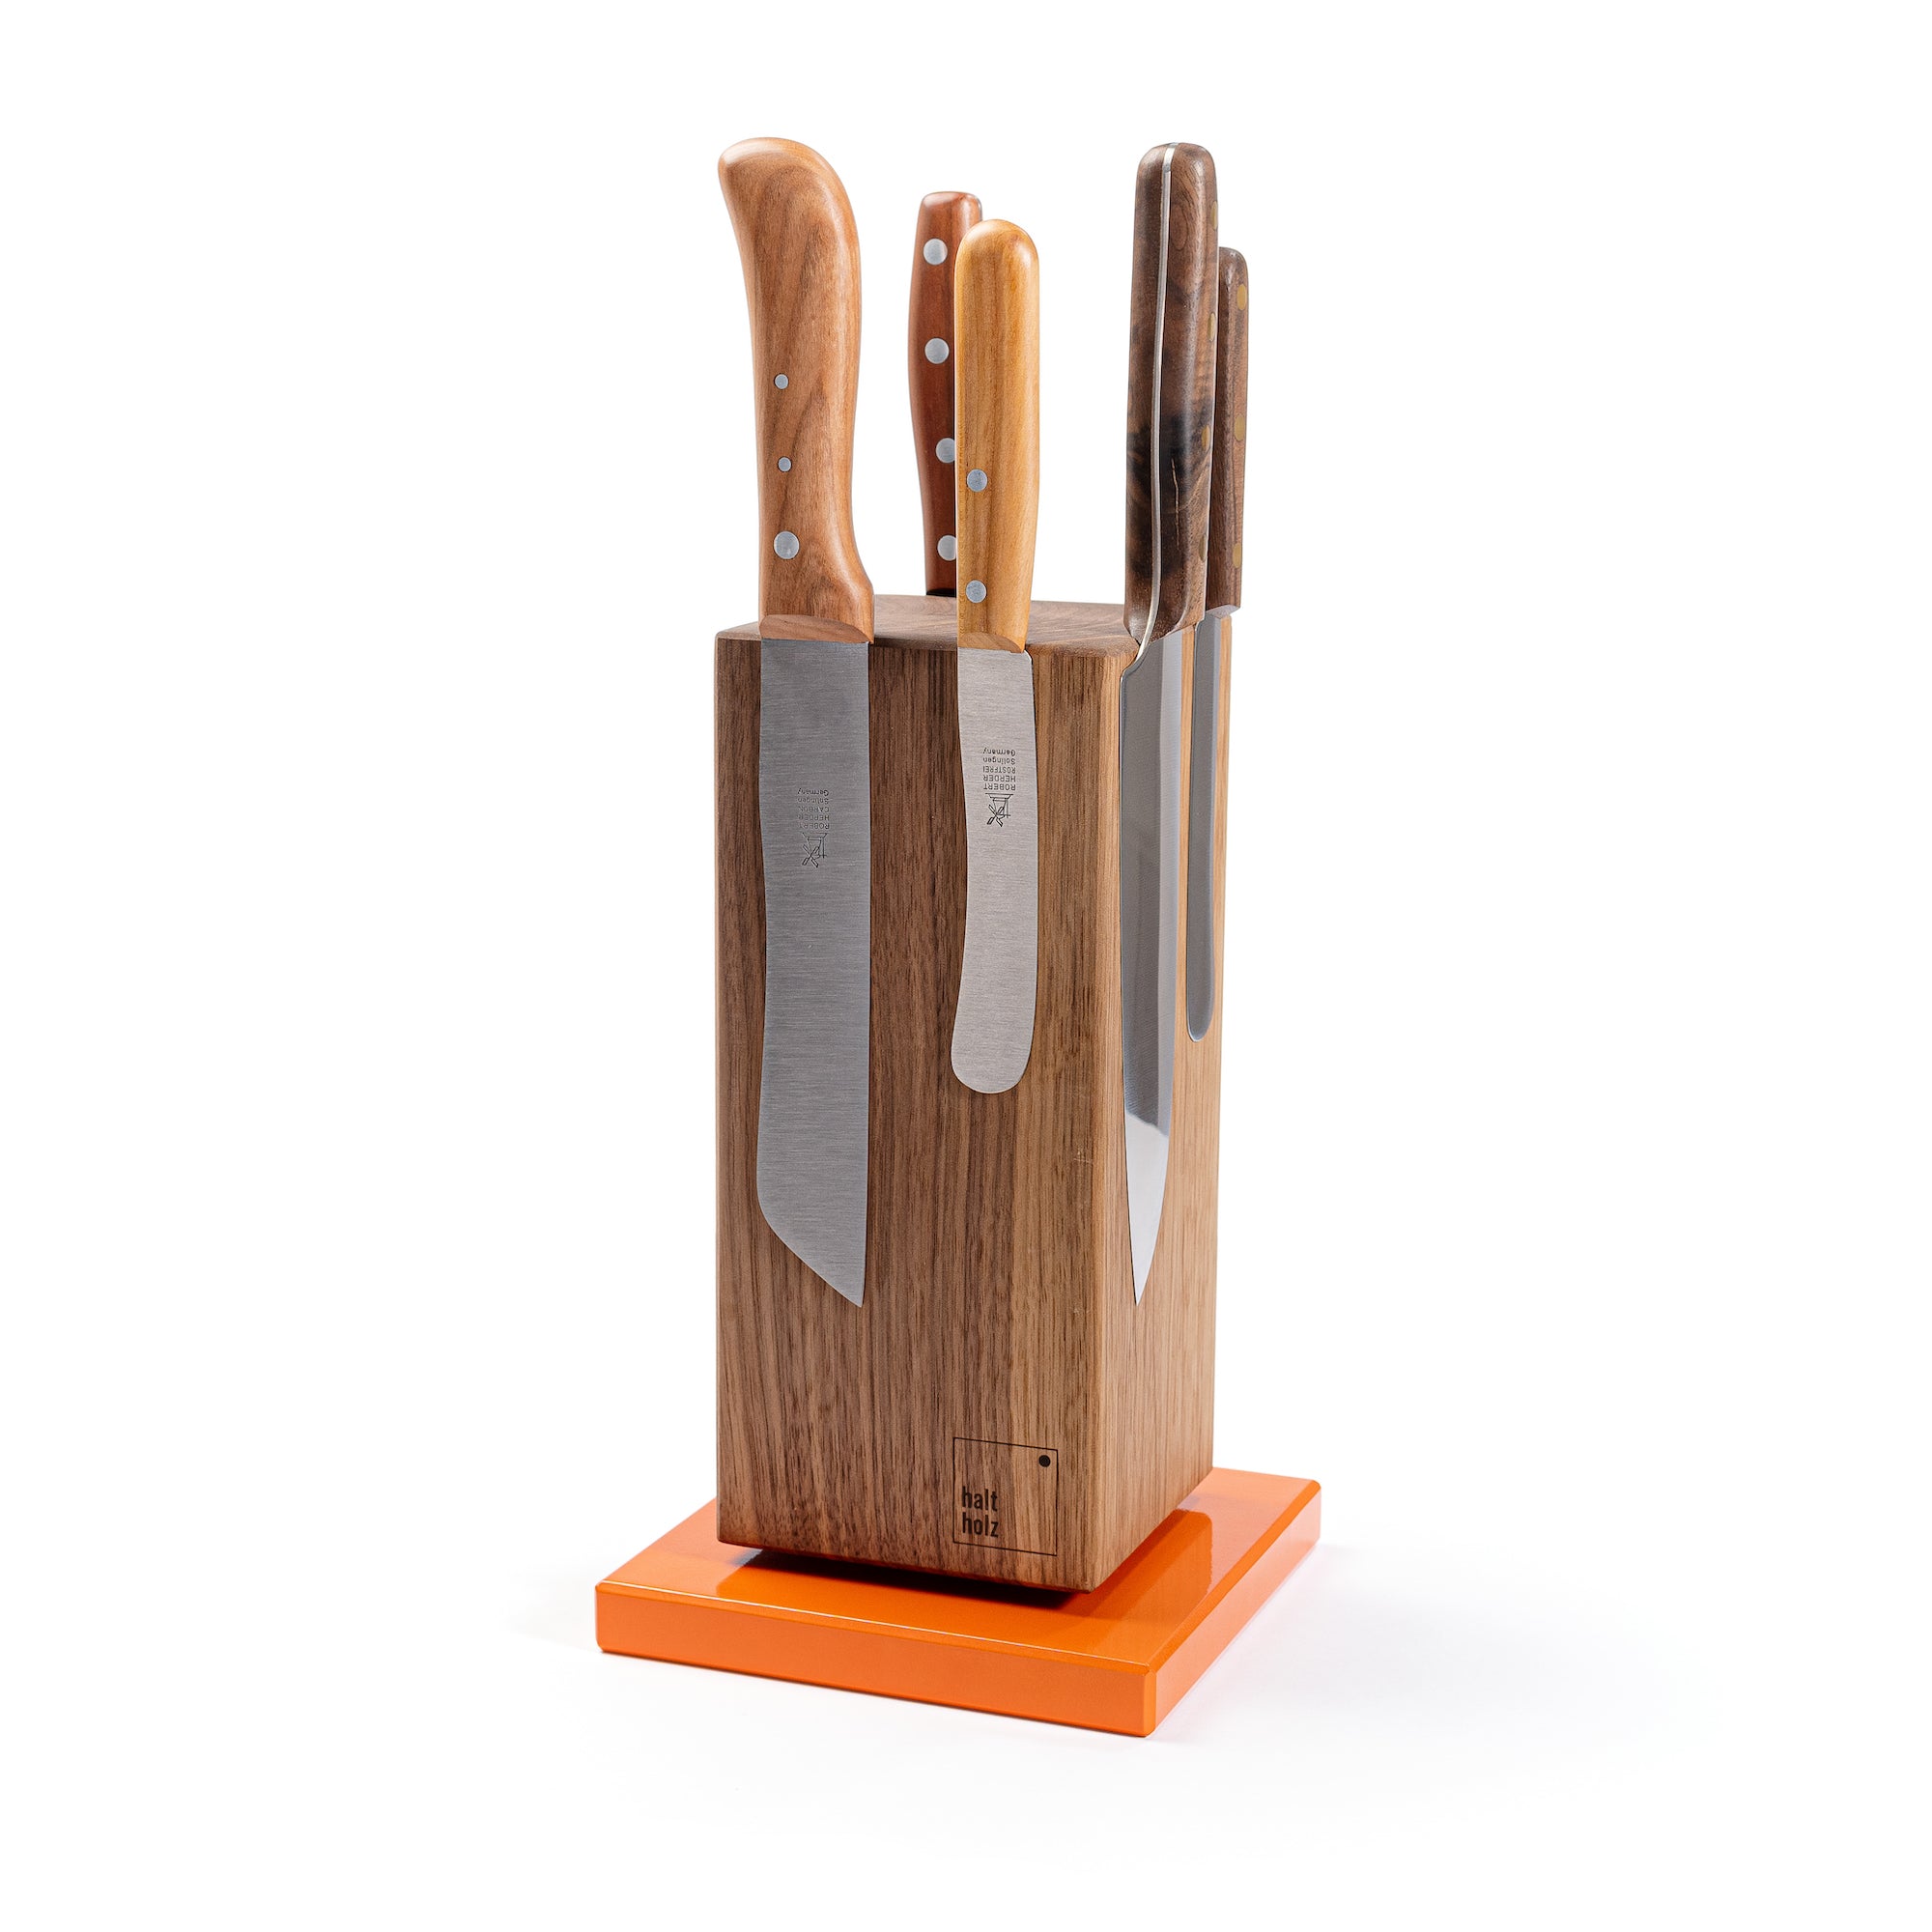 Kochmesser von Windmühlenmesser an einem magnetischen 360 Grad drehbaren Nussbaum Messerblock mit Stahlsockel in orange.